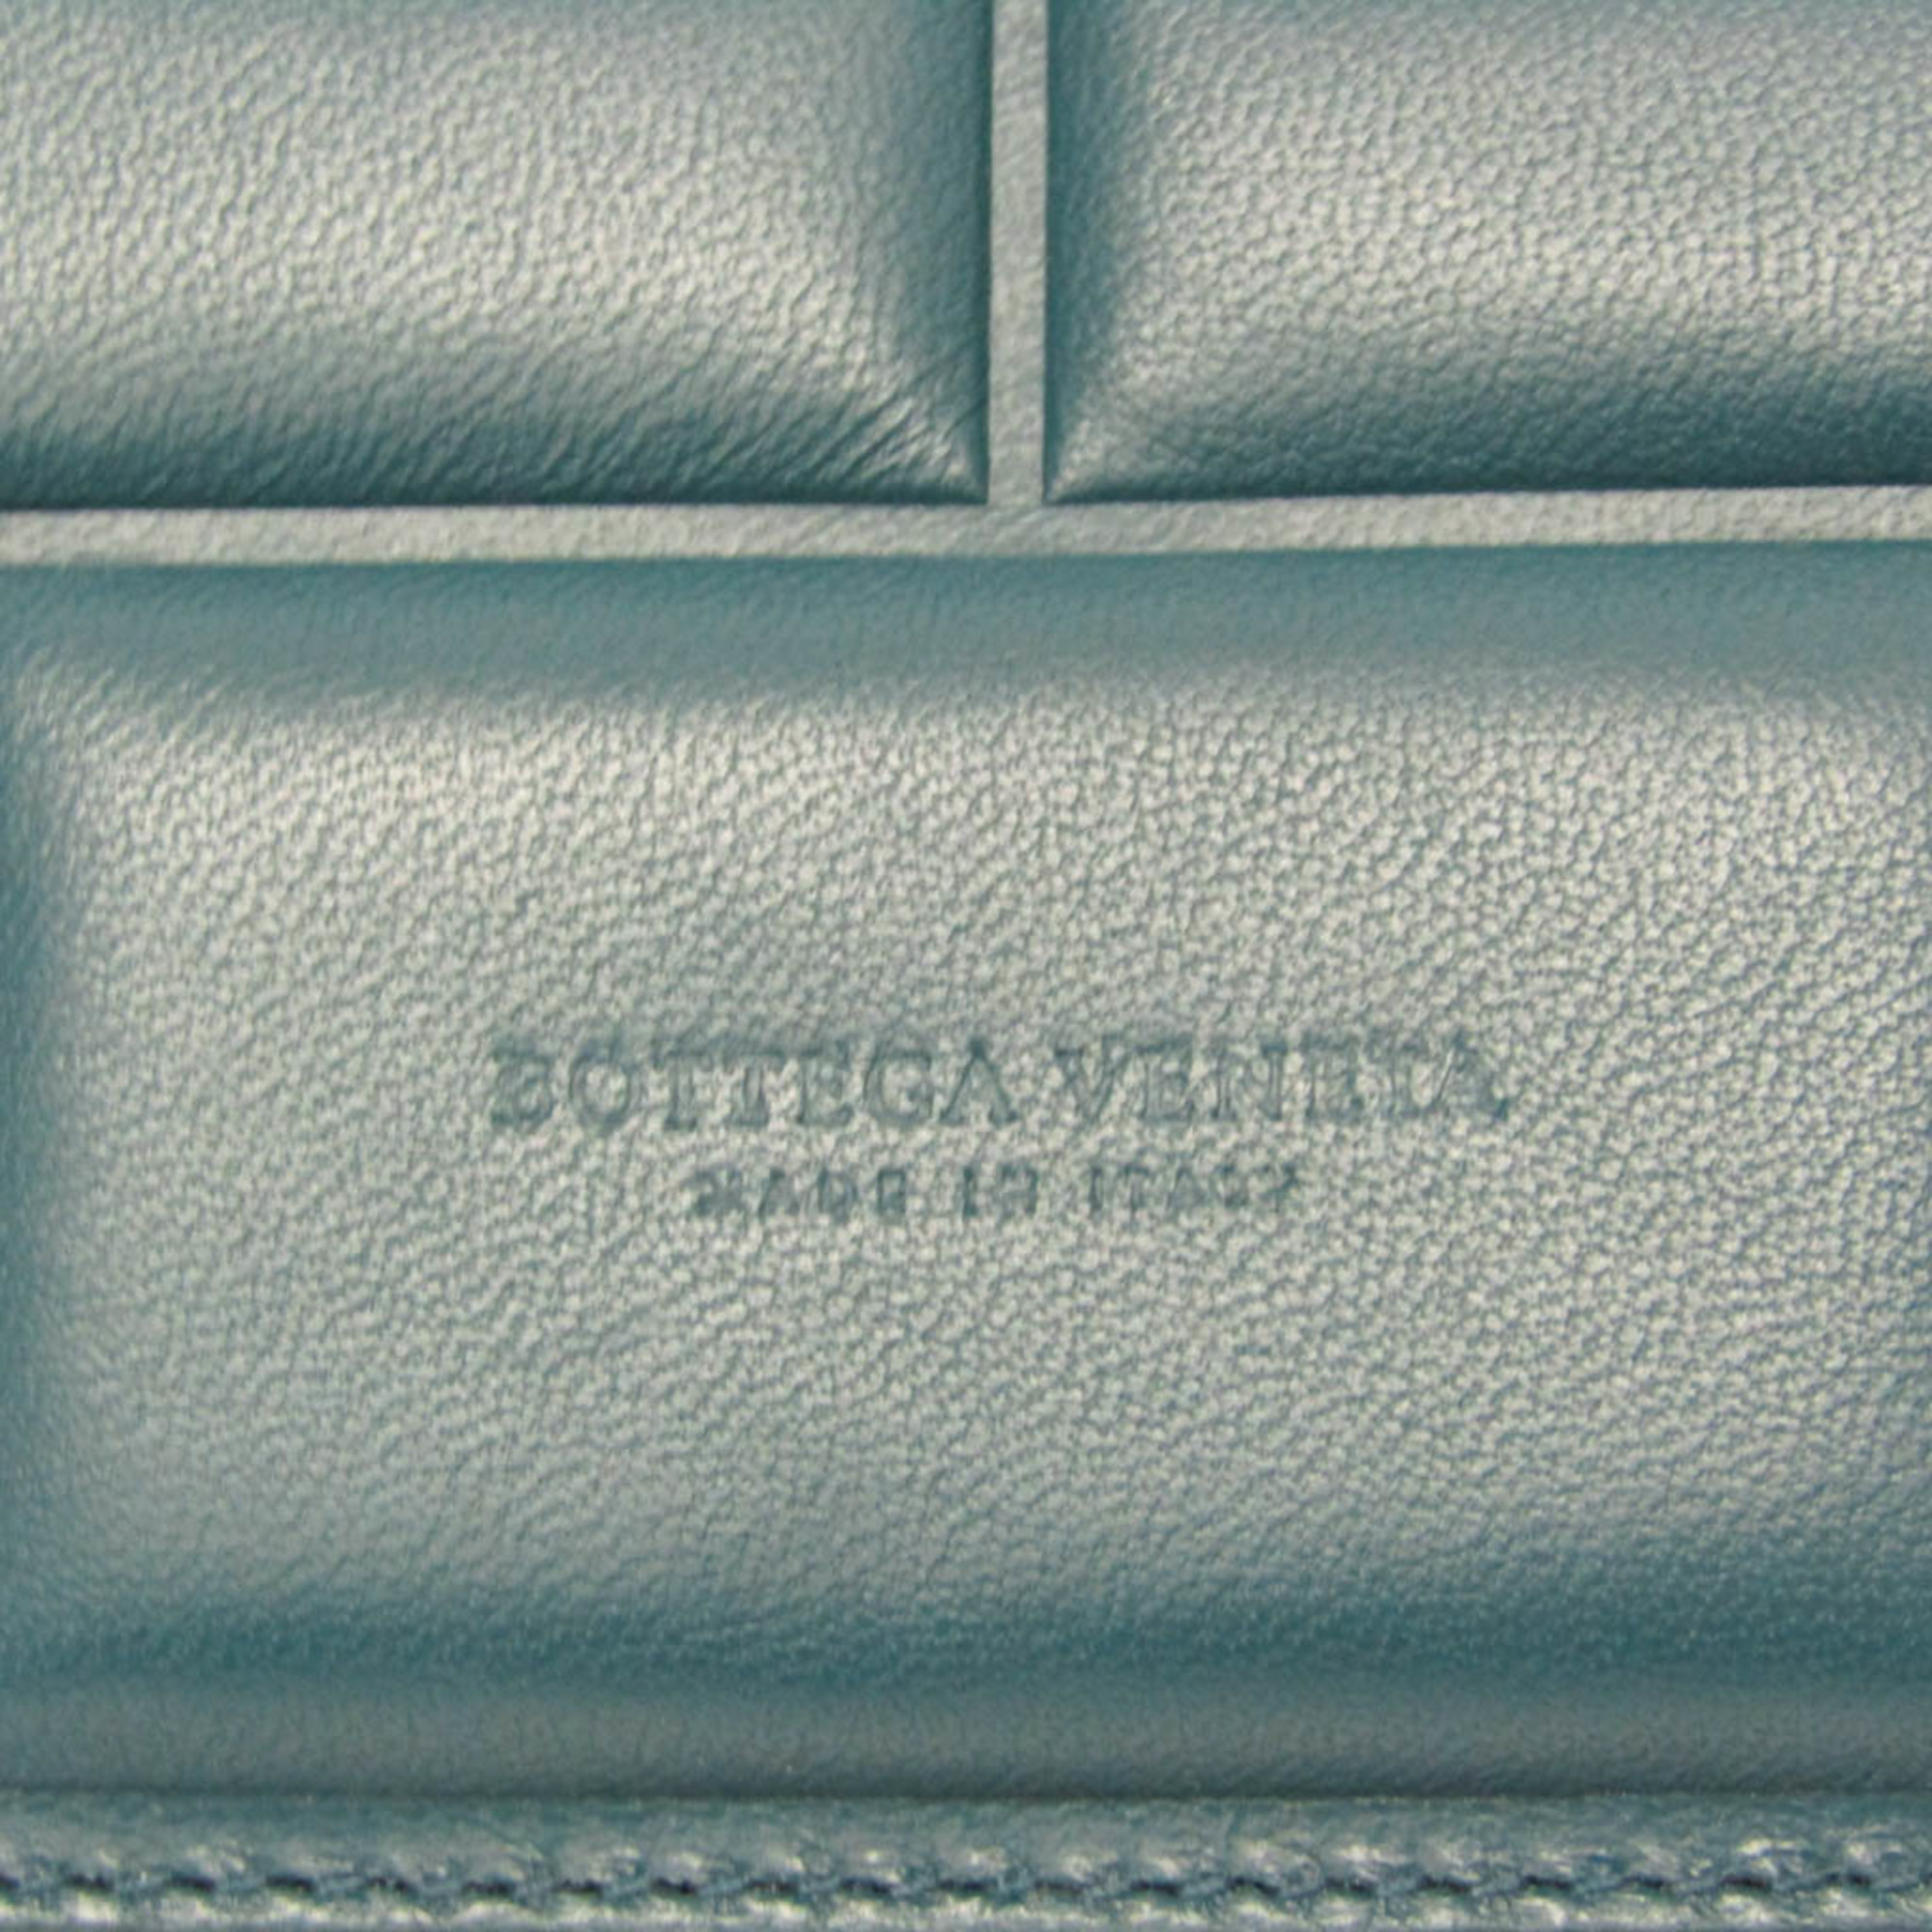 ボッテガ・ヴェネタ(Bottega Veneta) メンズ,レディース レザー クラッチバッグ ダークグリーン